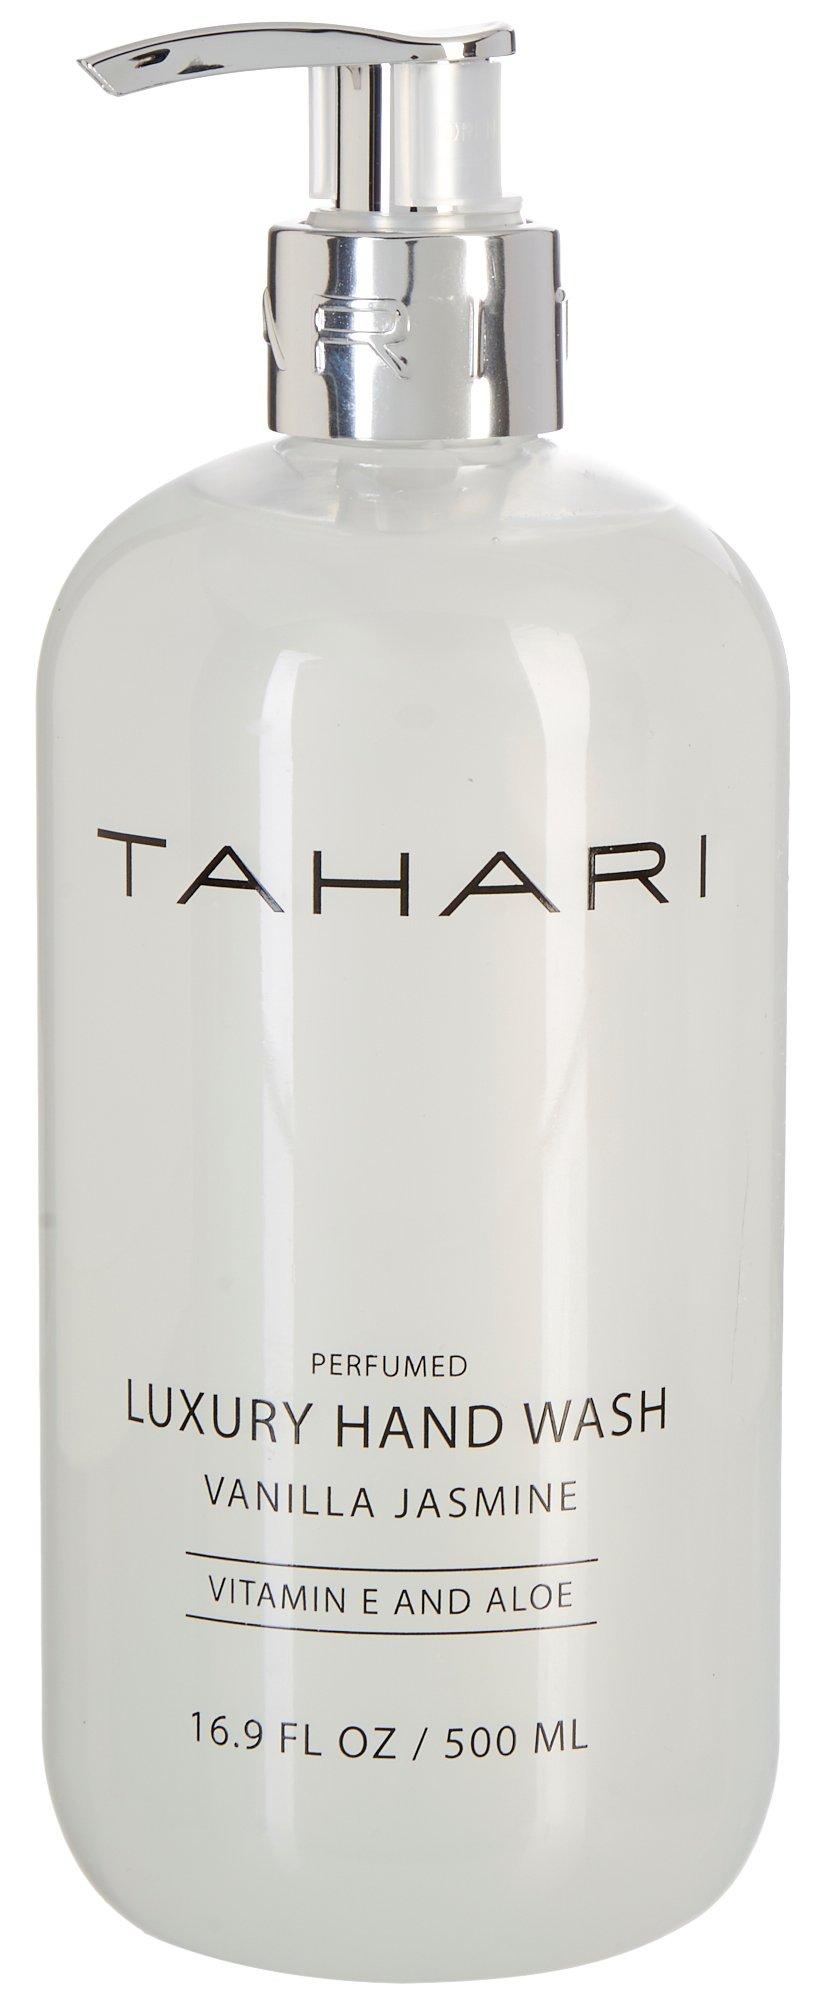 TAHARI Vanilla Jasmine Vitamin & Aloe Luxury Hand Wash